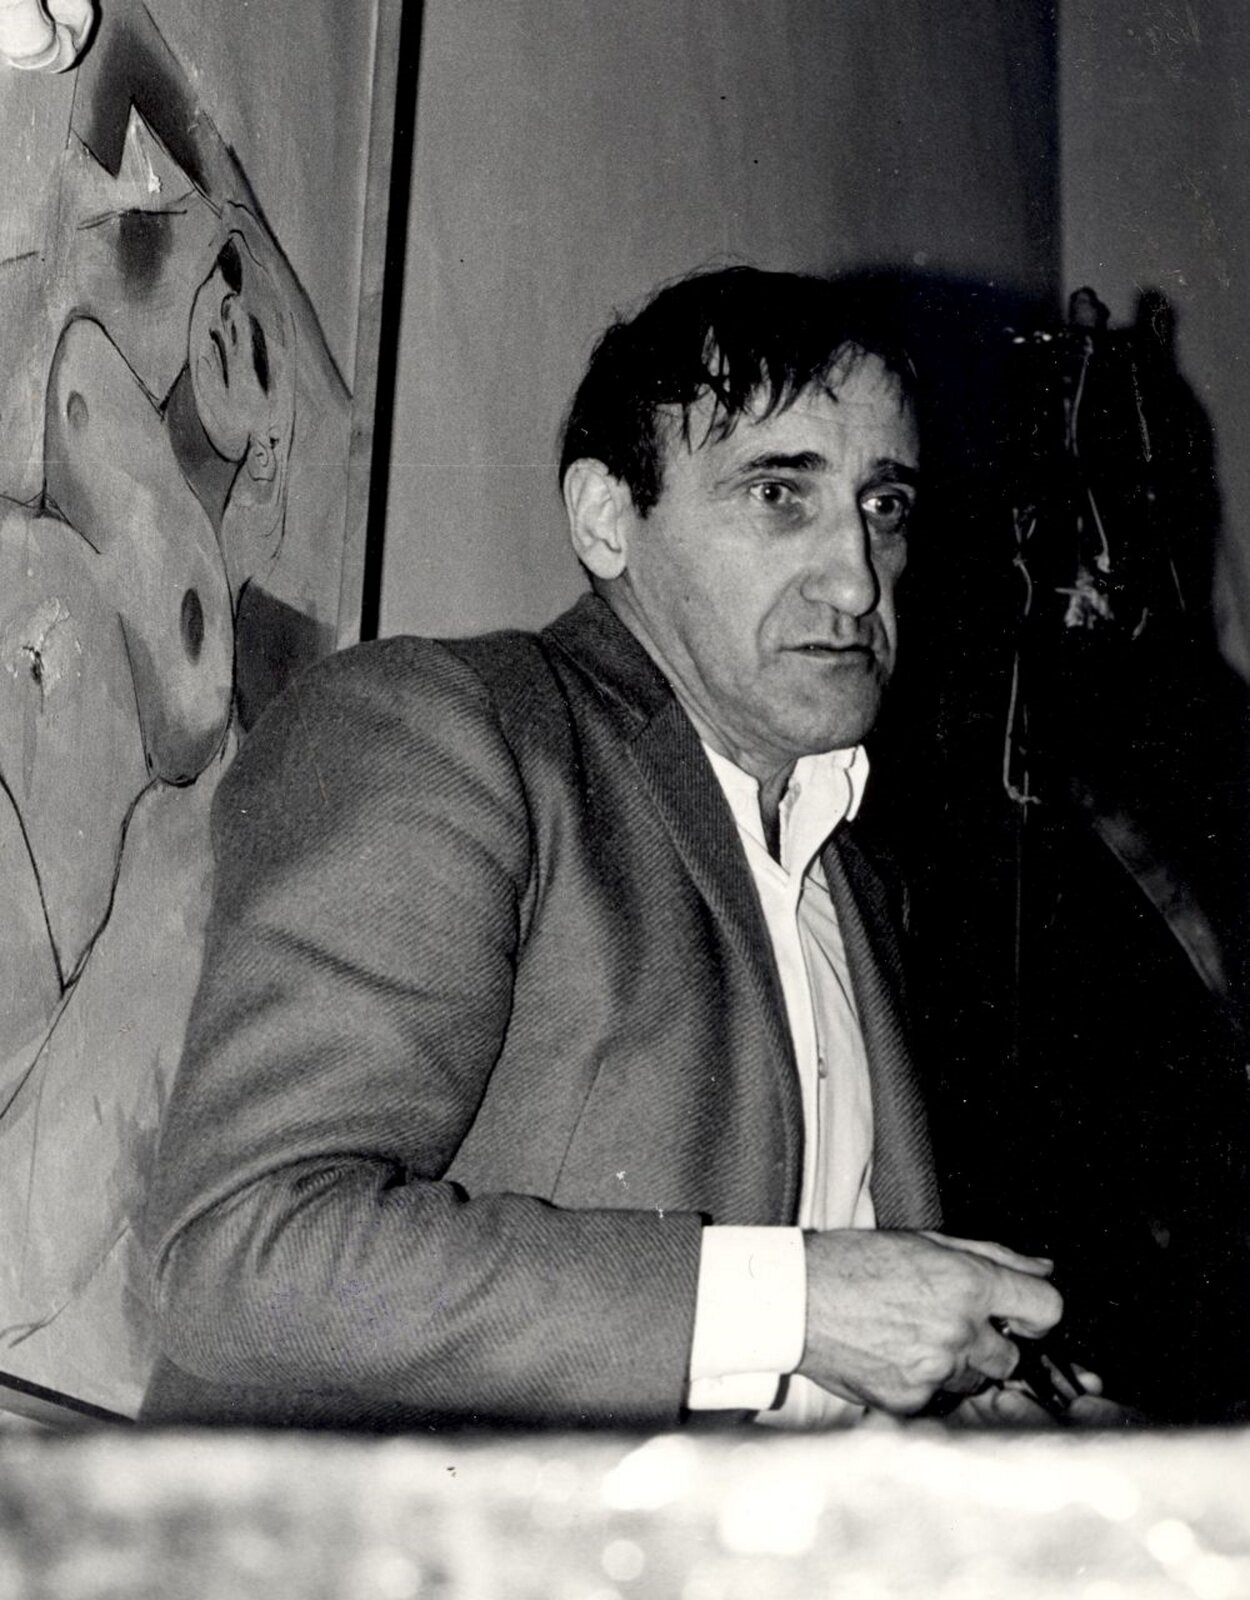 Ilustracja przedstawia czarno-białe zdjęcie Tadeusza Kantora. Mężczyzna ma zdziwiony i zmęczony wyraz twarzy. Ubrany jest w białą koszulę i szarą marynarkę.